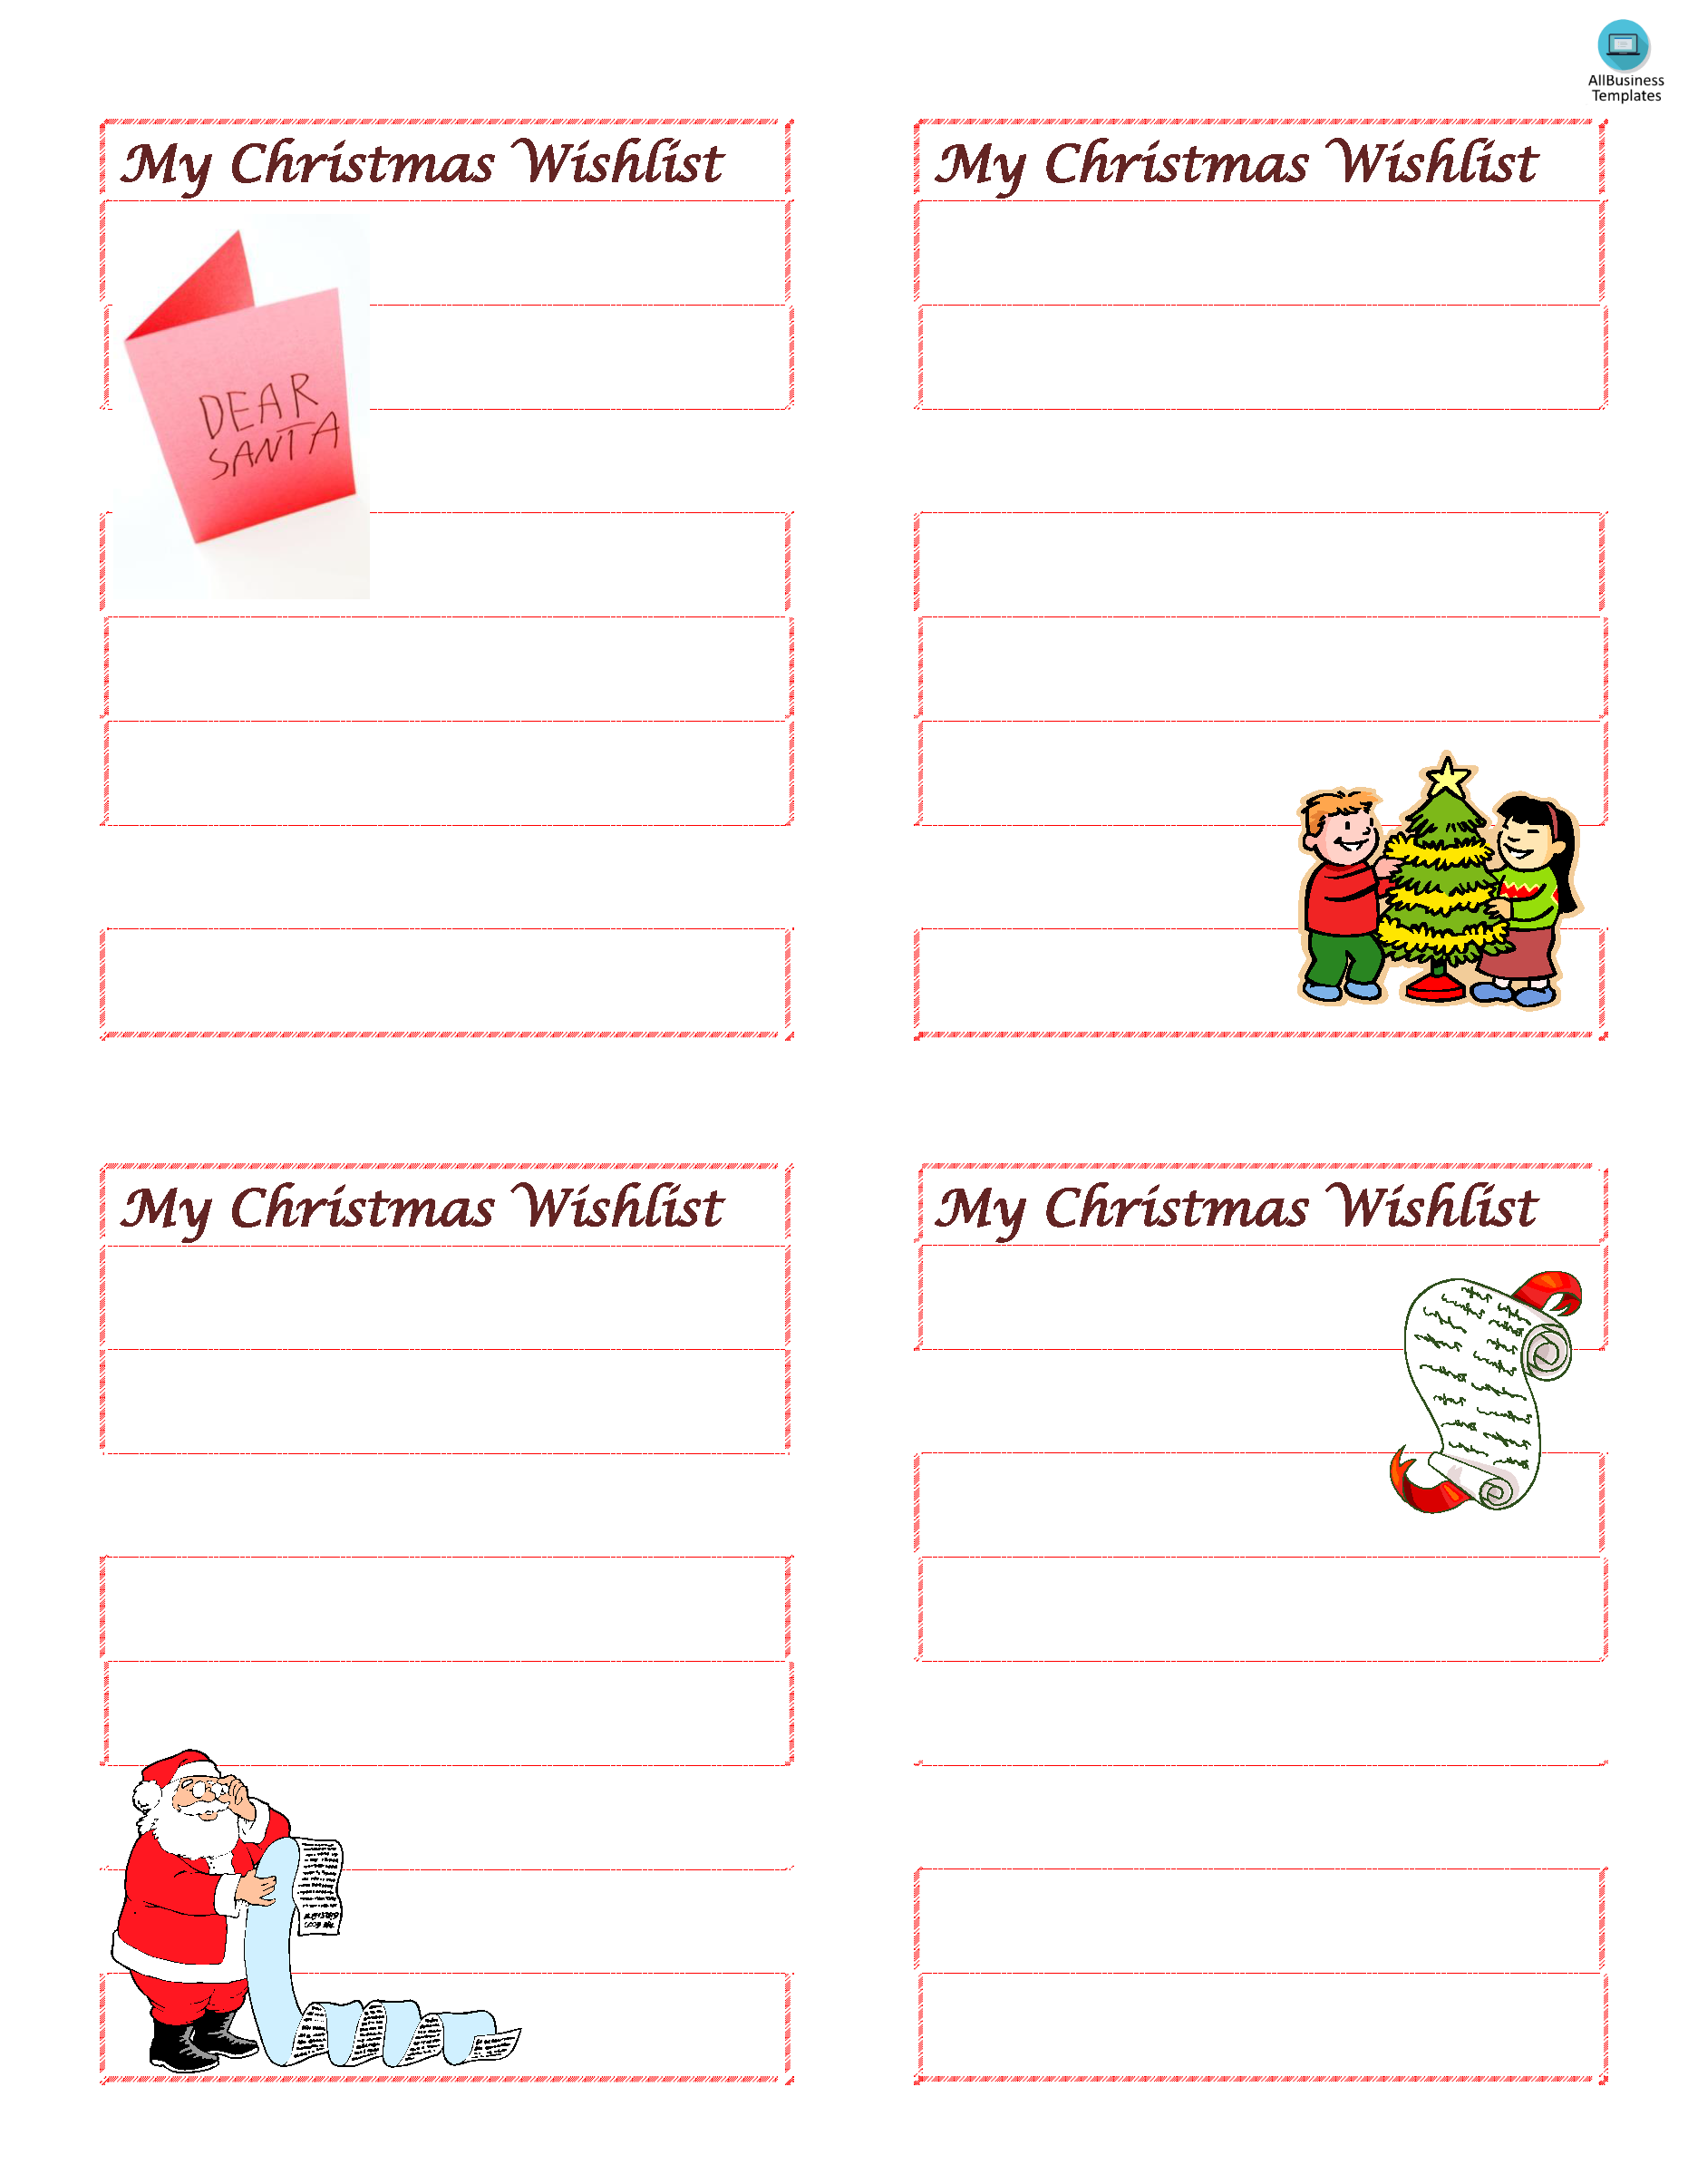 Wish List for Christmas 模板